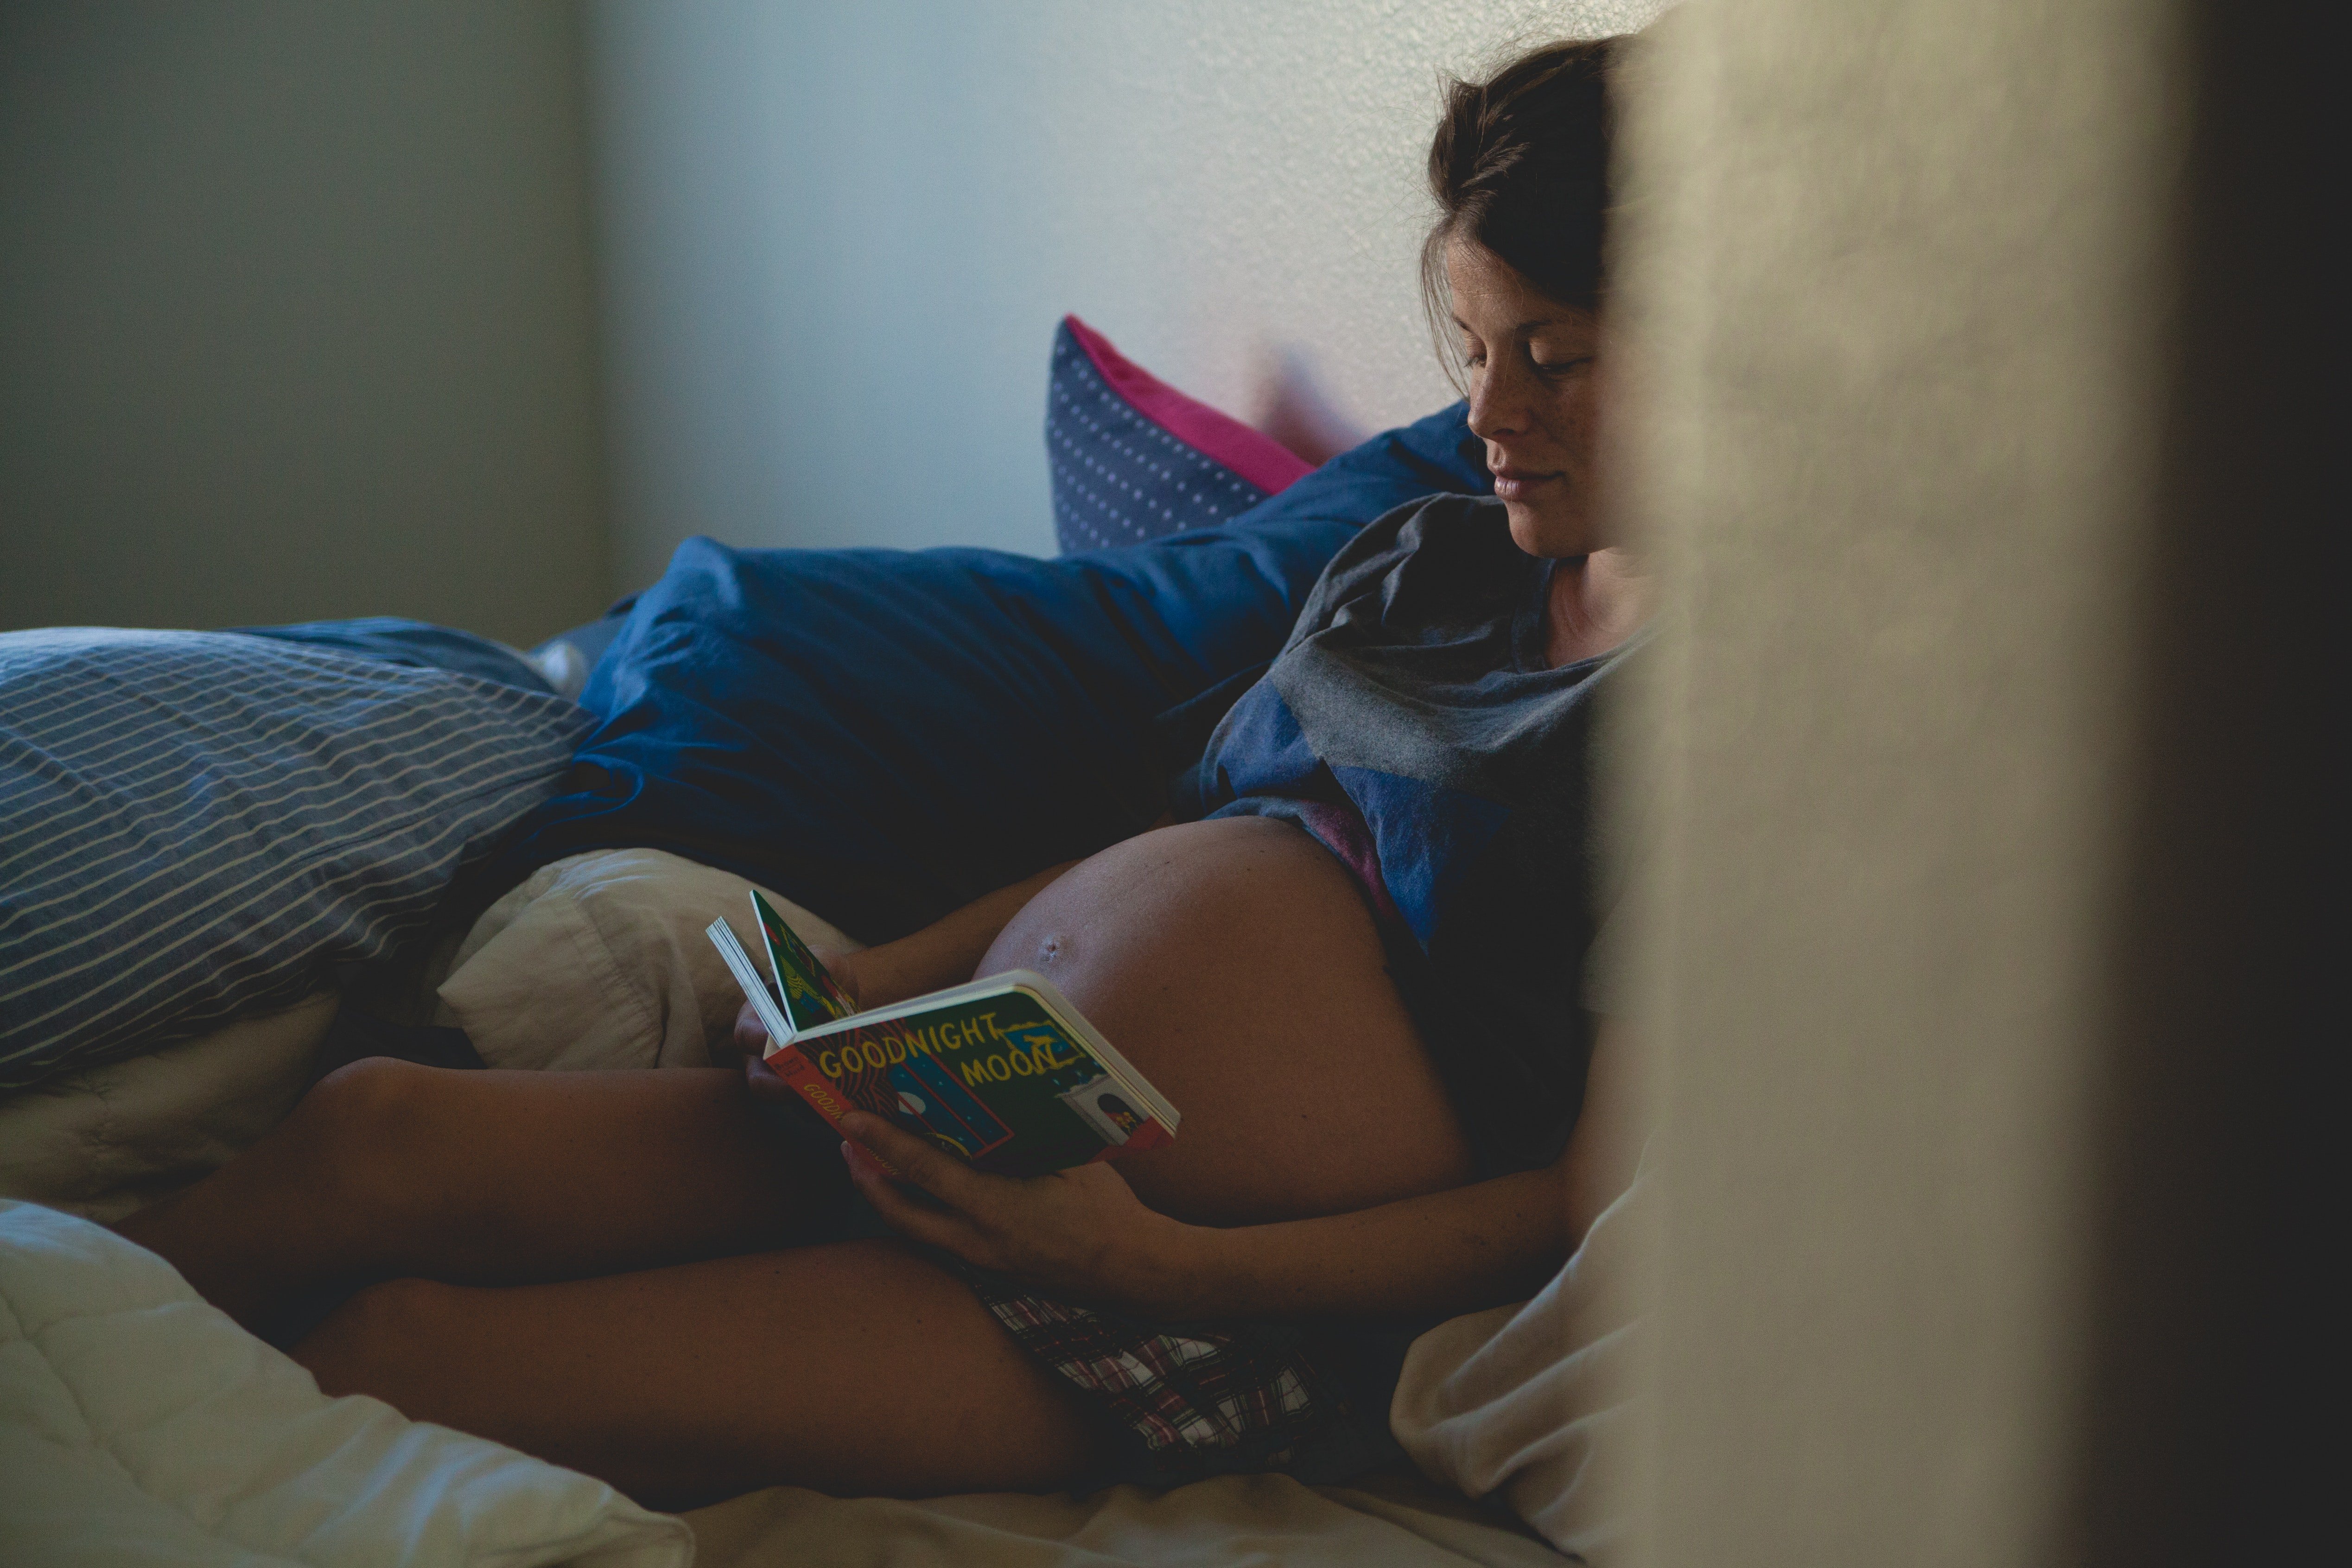 Mujer embarazada | Imagen tomada de: Pexels